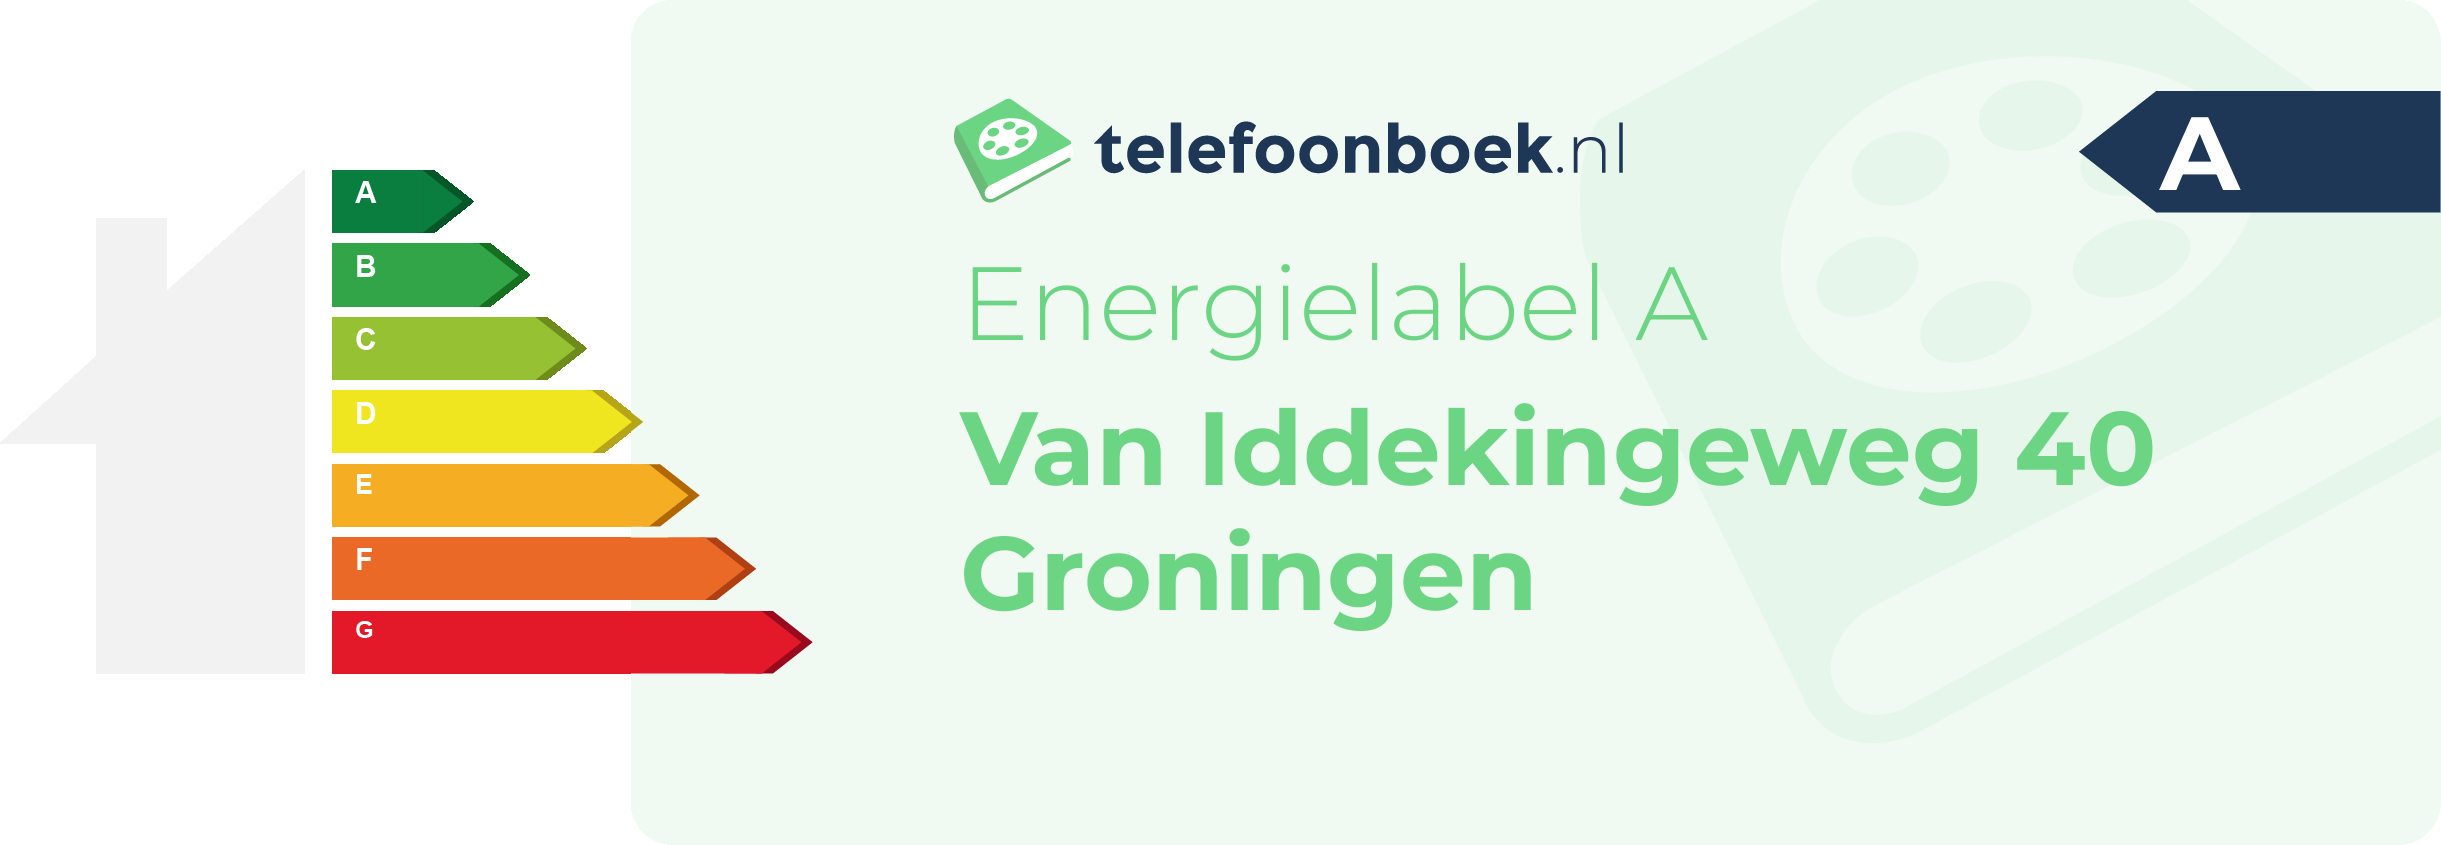 Energielabel Van Iddekingeweg 40 Groningen